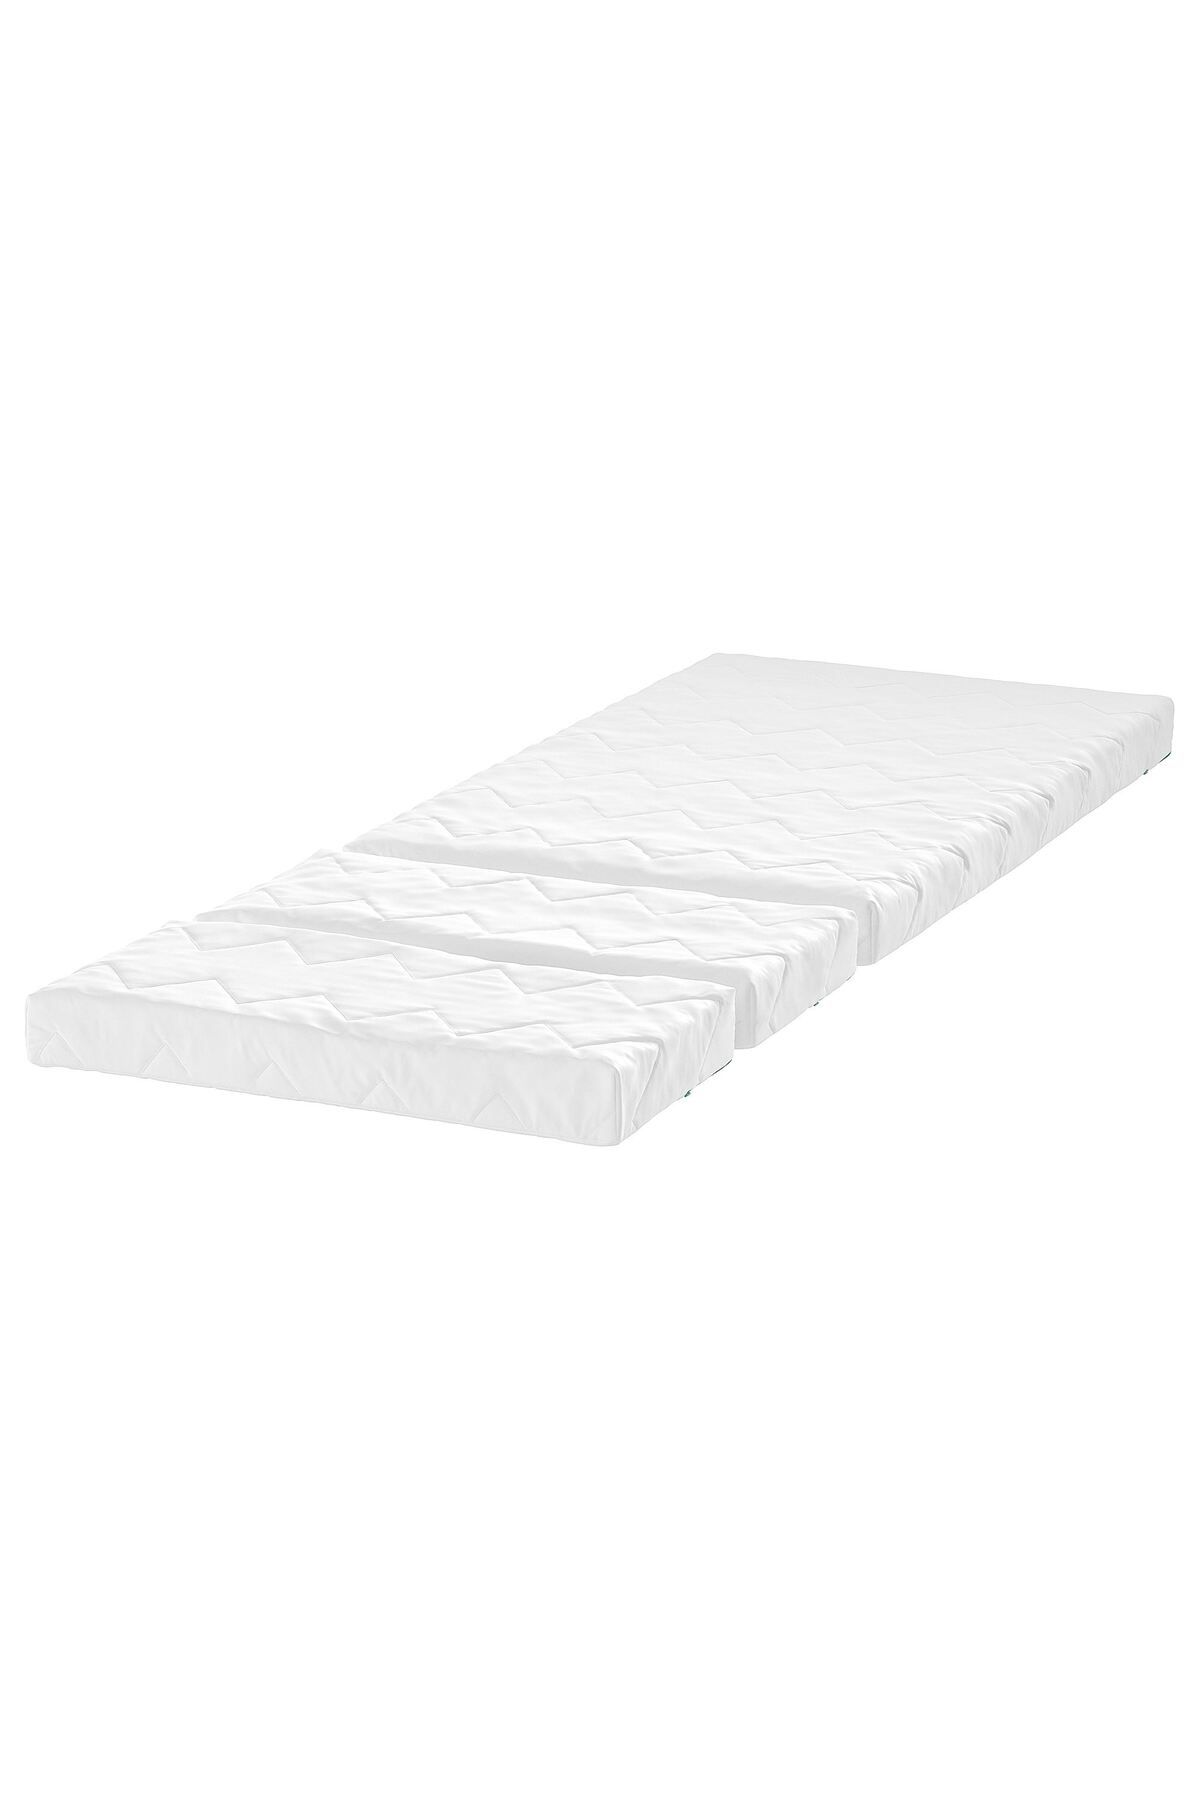 IKEA VIMSIG uzayabilen çocuk yatağı, beyaz, 80x200 cm